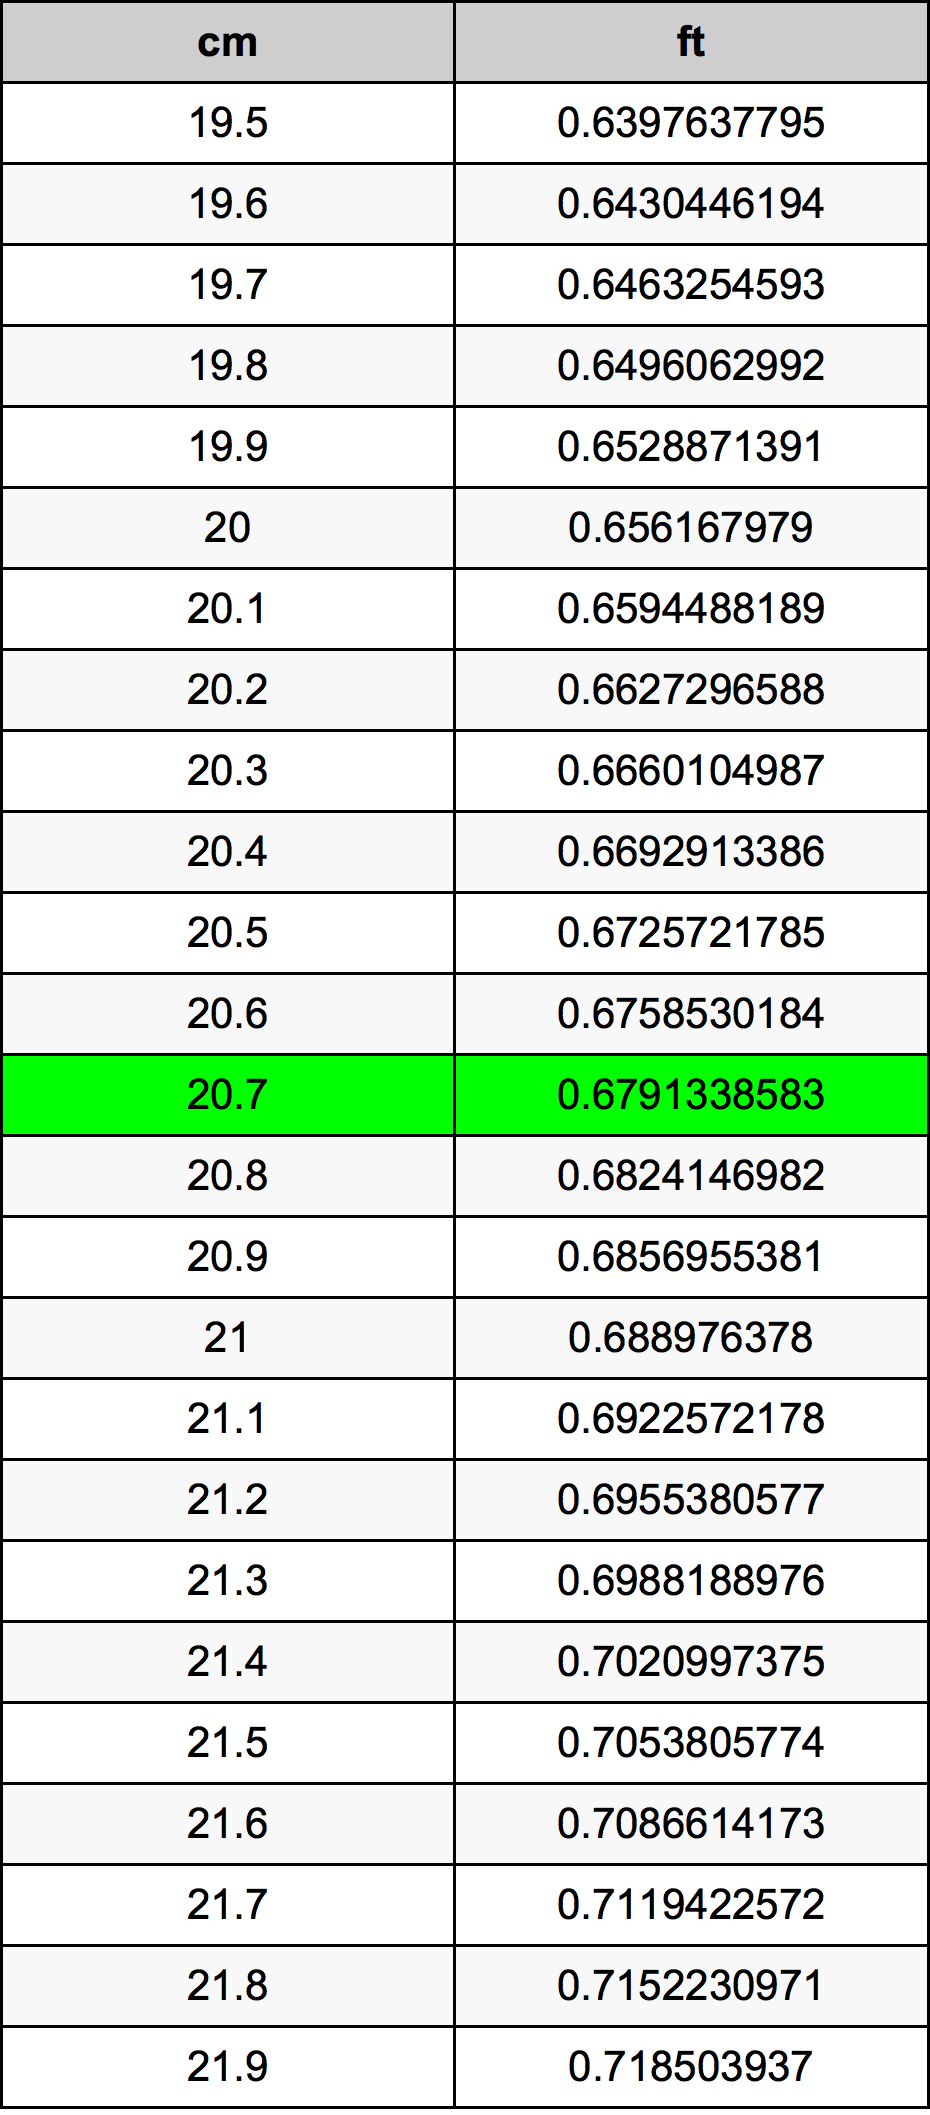 20.7 Centiméter átszámítási táblázat